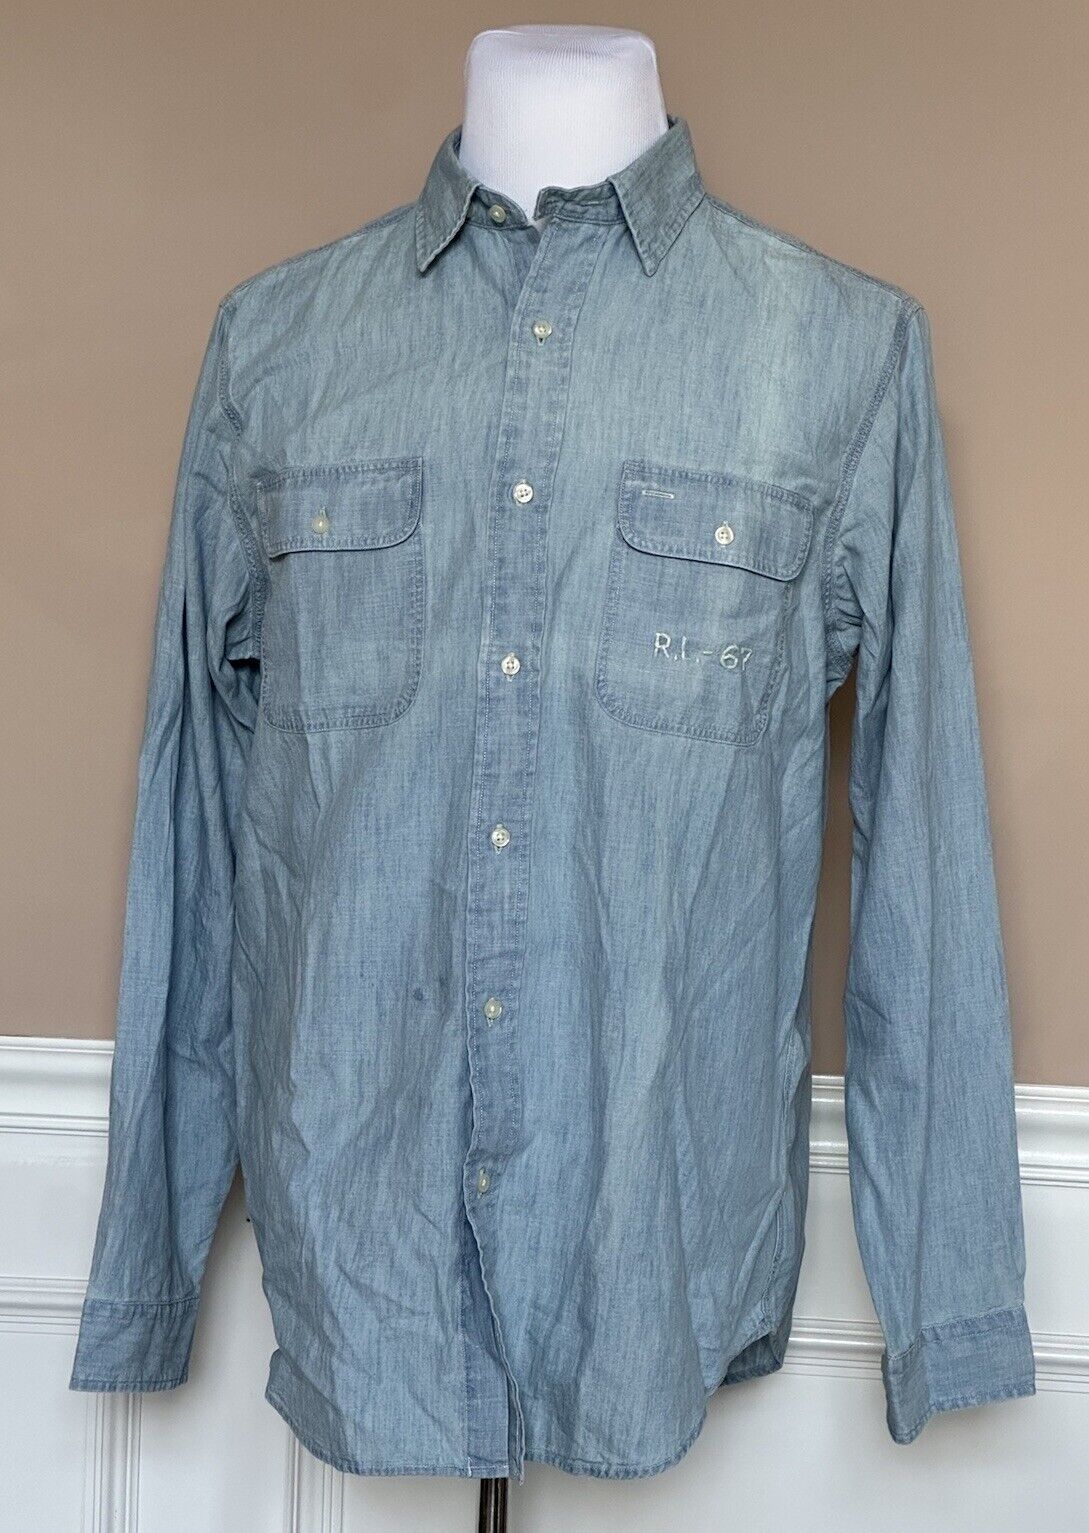 NWT $148 Polo Ralph Lauren Men's Button-down Blue Cotton Shirt Large